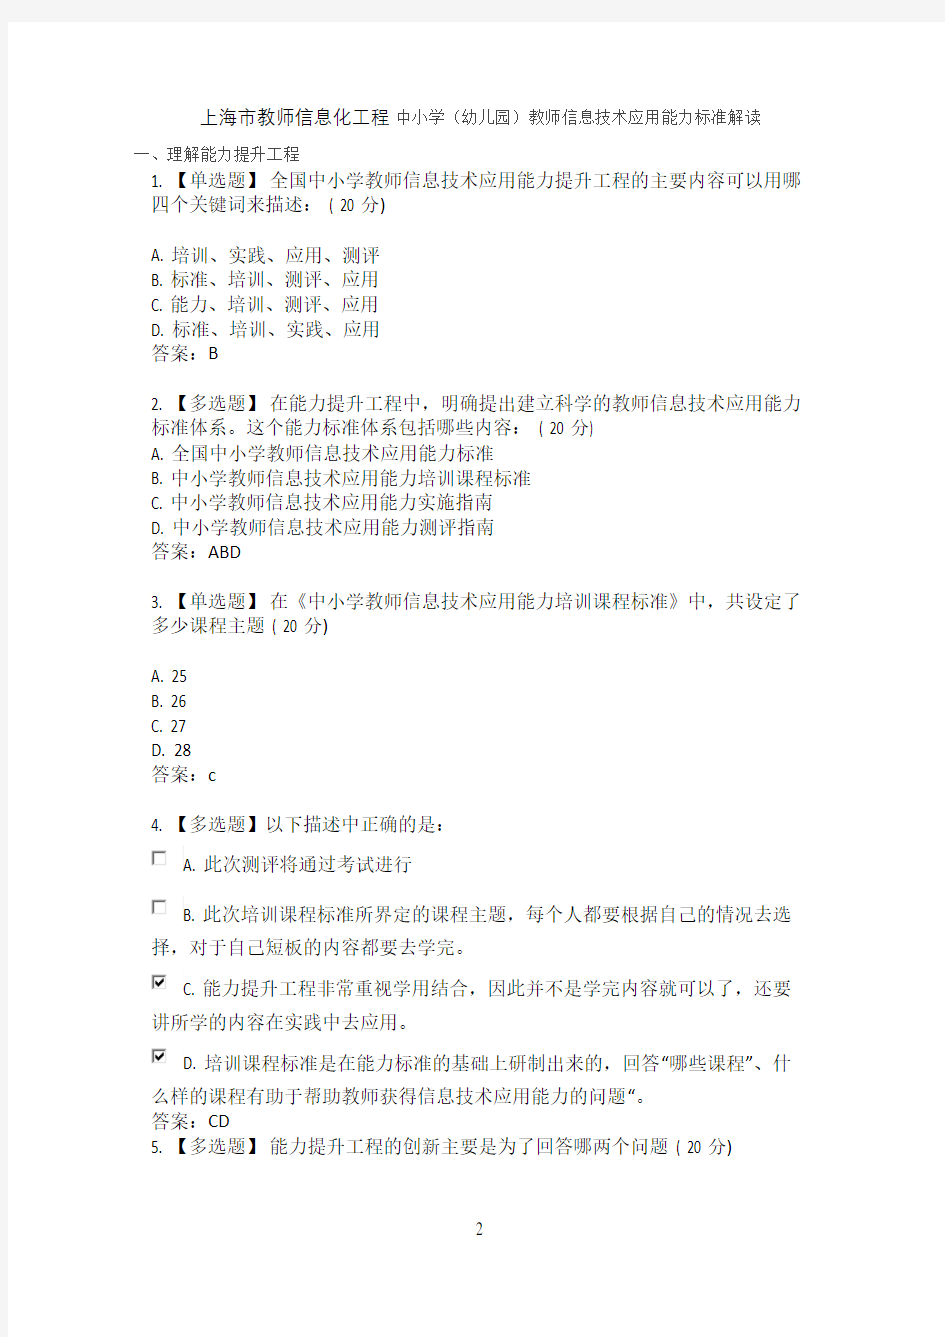 上海市教师信息化工程中小学(幼儿园)教师信息技术应用能力标准解读答案